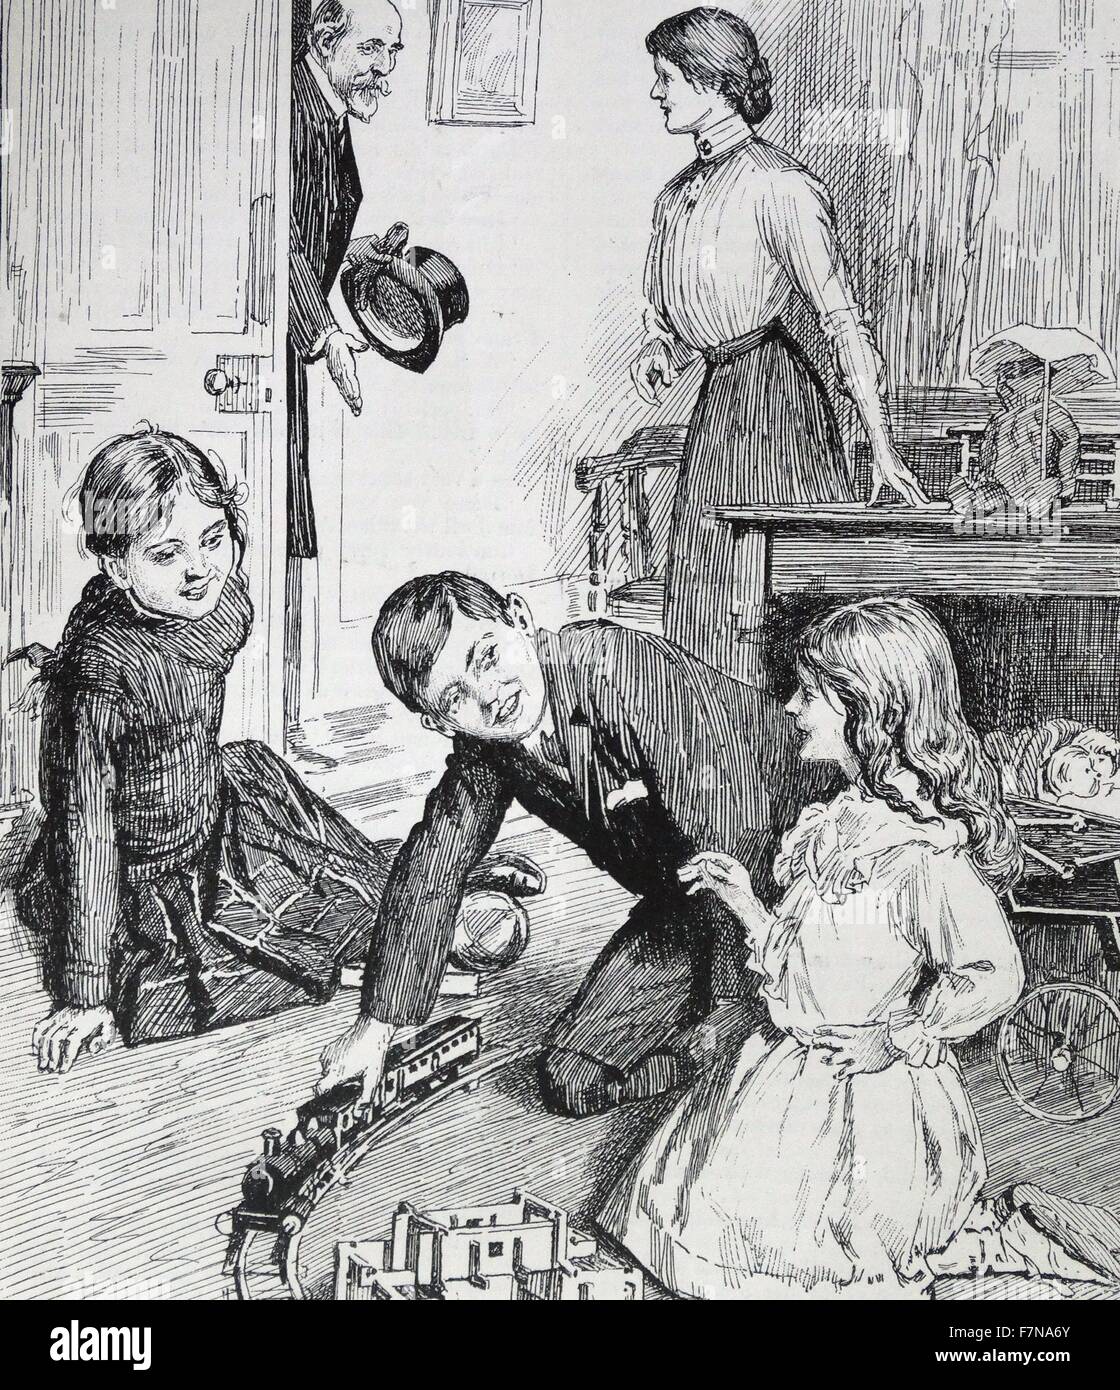 Abbildung aus einem Buch zeigt junge Kinder zusammen spielen. Datiert 1913 Stockfoto